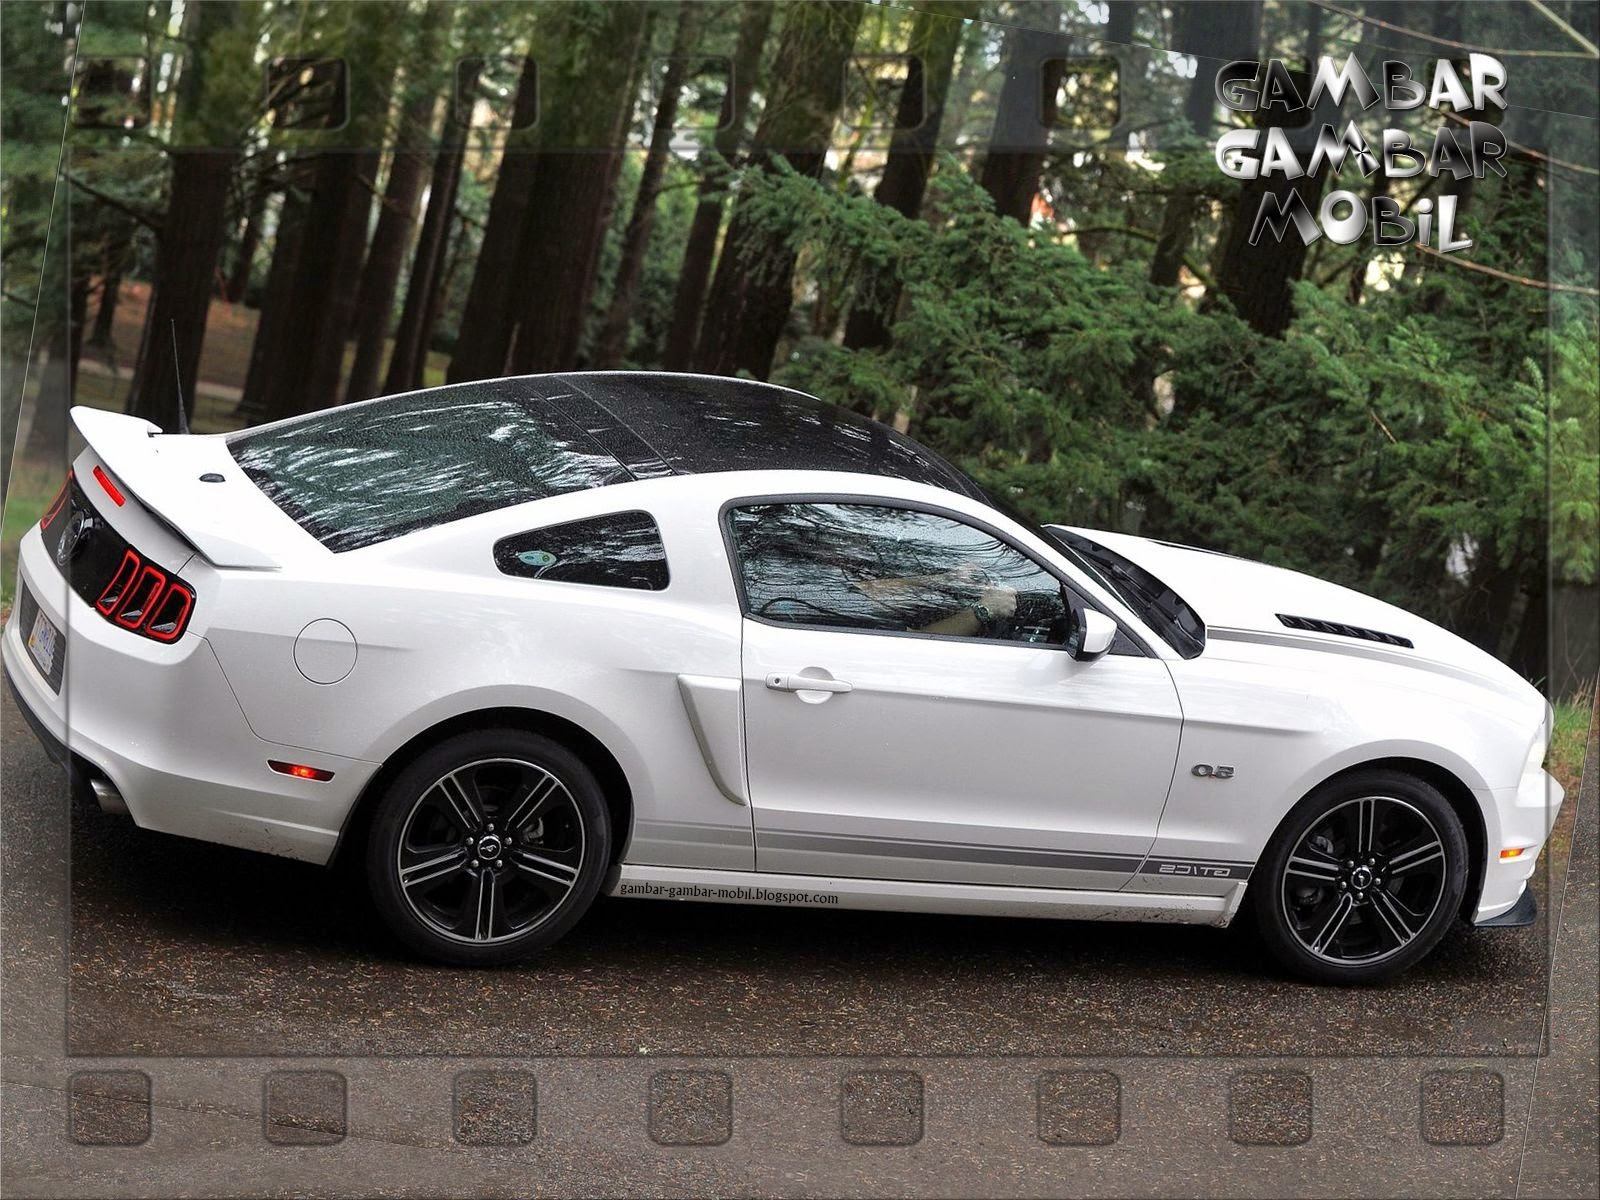 Foto Mobil Mustang Terbaru Kawan Modifikasi